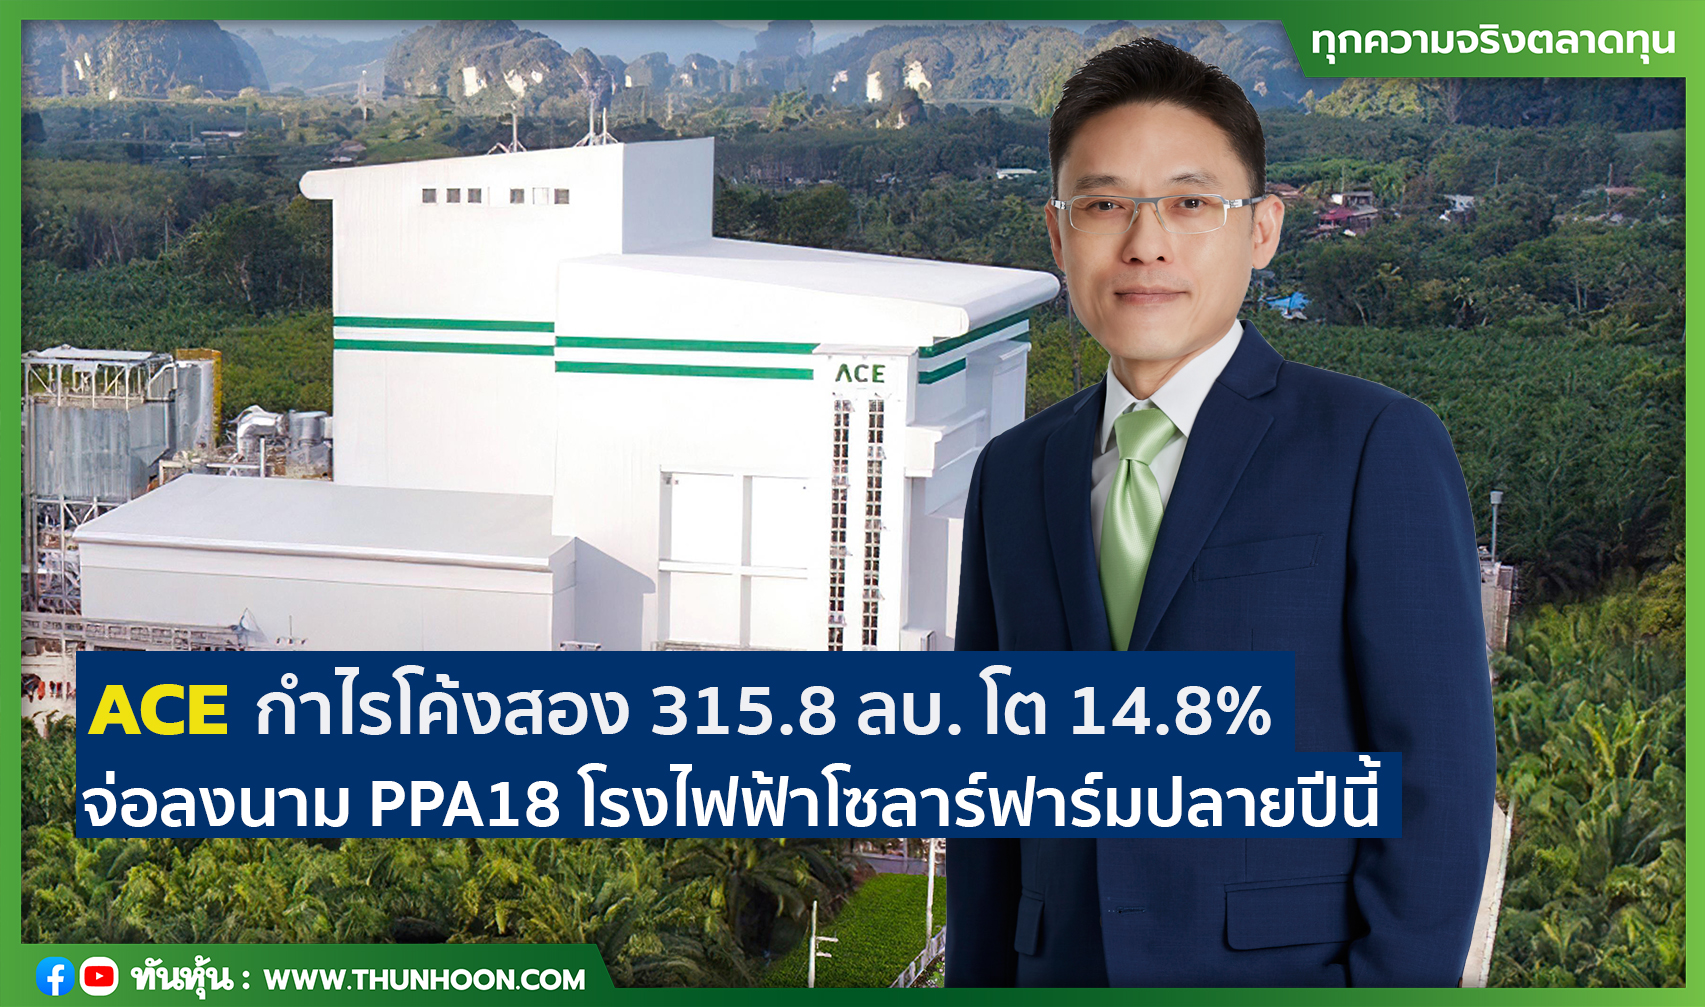 ACE กำไรโค้งสอง 315.8 ลบ. โต 14.8% จ่อลงนาม PPA18 โรงไฟฟ้าโซลาร์ฟาร์มปลายปีนี้